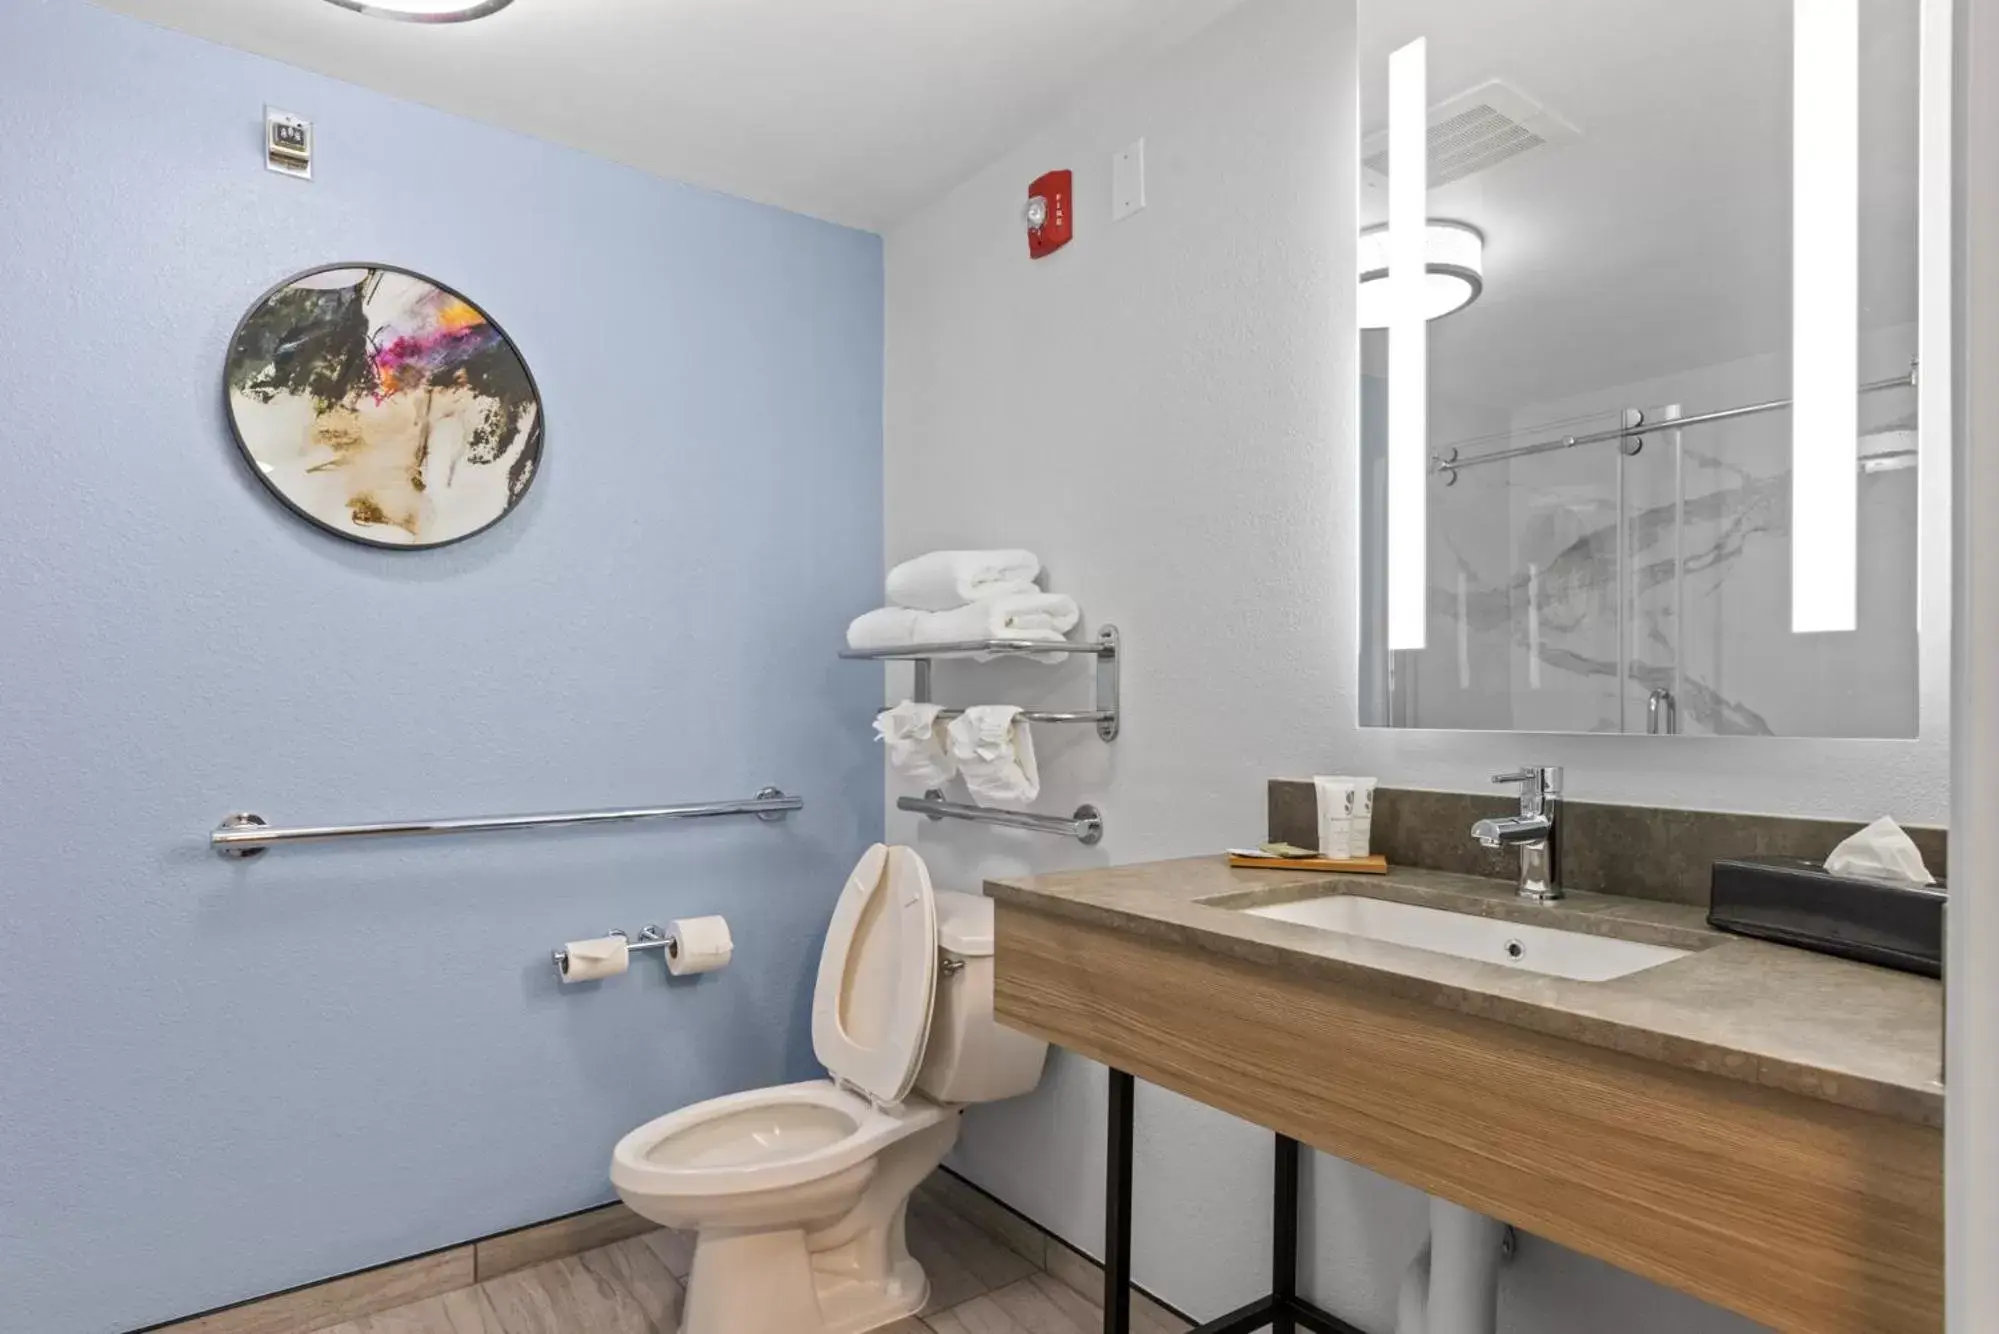 Bathroom in Country Inn & Suites by Radisson, Savannah Airport, GA